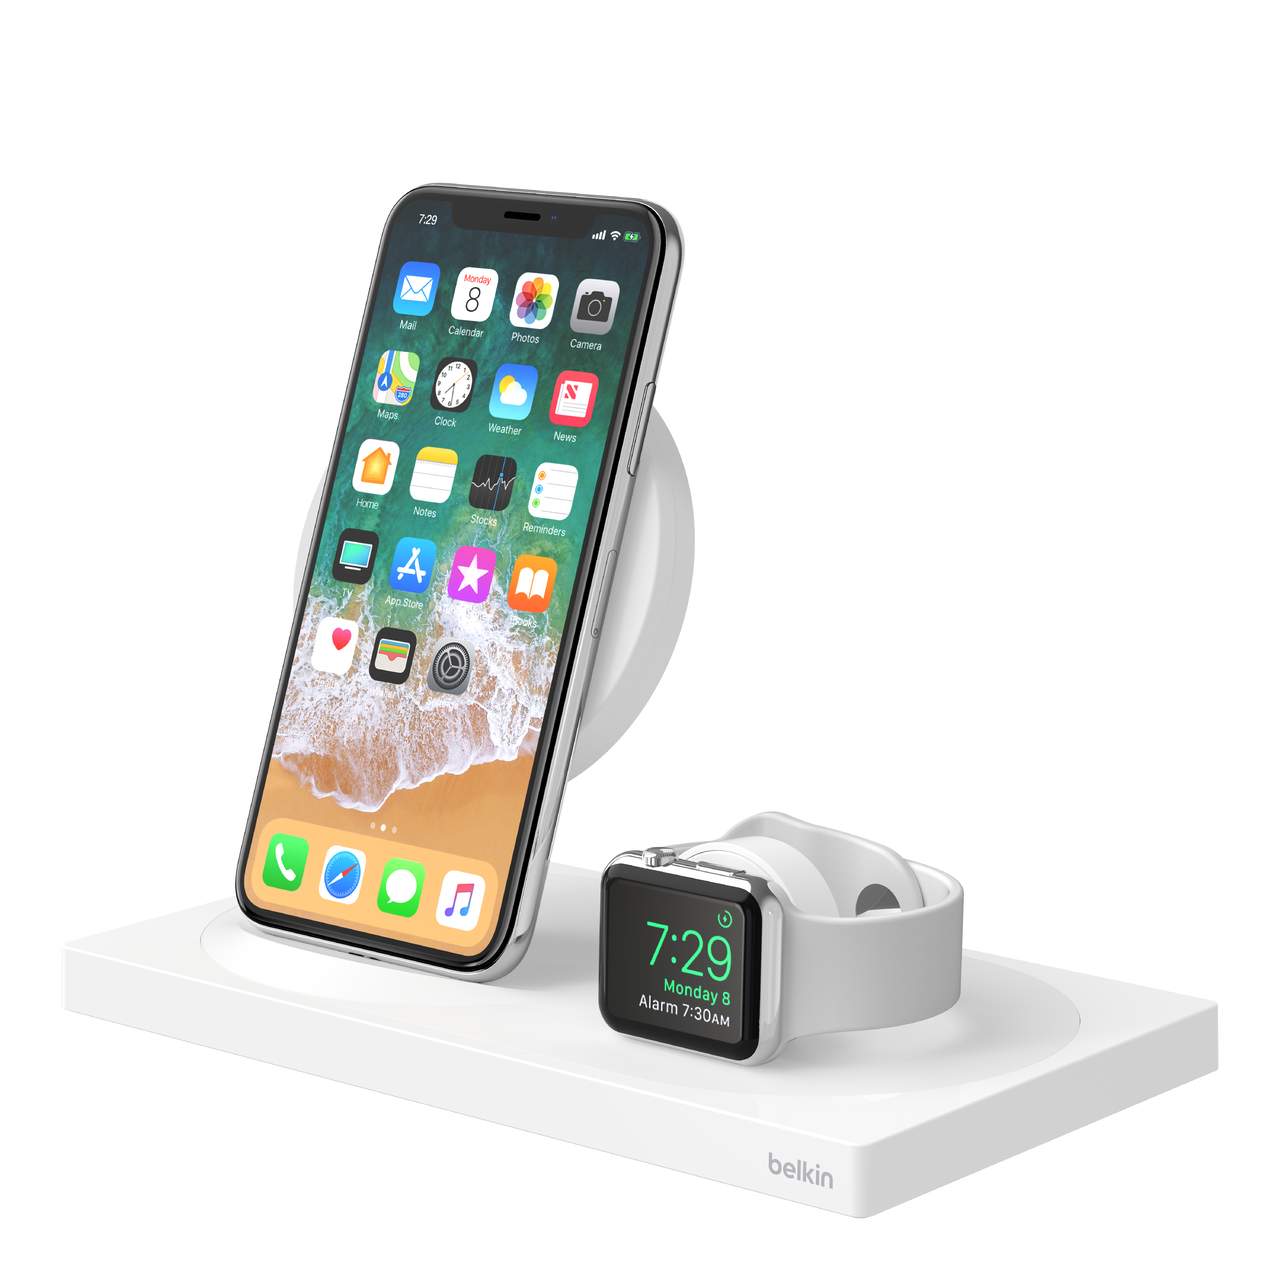 Accessoire Apple : rechargez votre iPhone ou votre Apple Watch